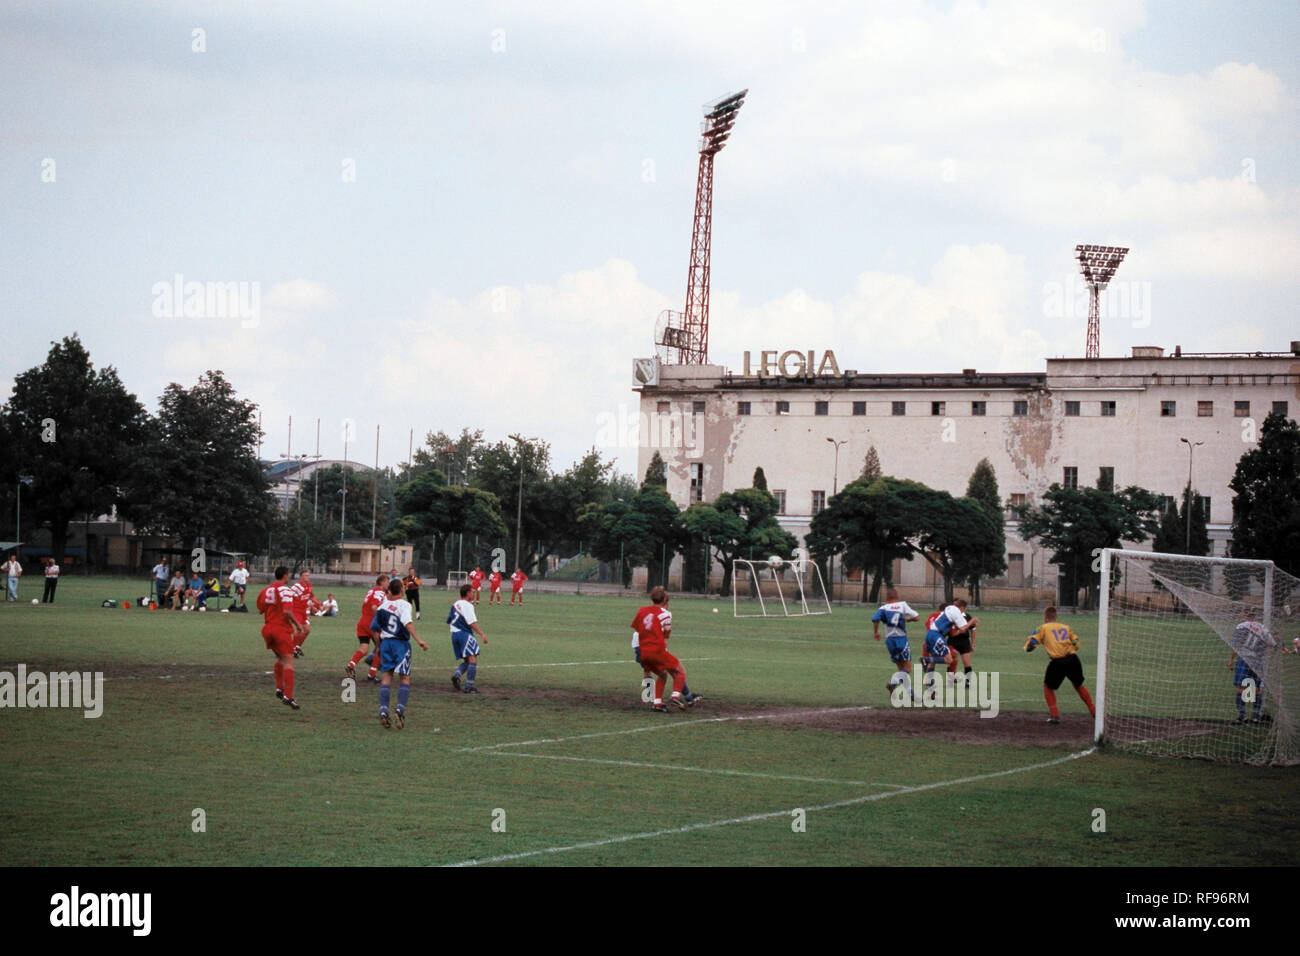 General view of Legia Warsaw FC Football Ground, Stadion Wojska Polskiego (Polish Army Stadium), ul Lazienkowska, Warsaw, Poland, pictured on 25th Aug Stock Photo